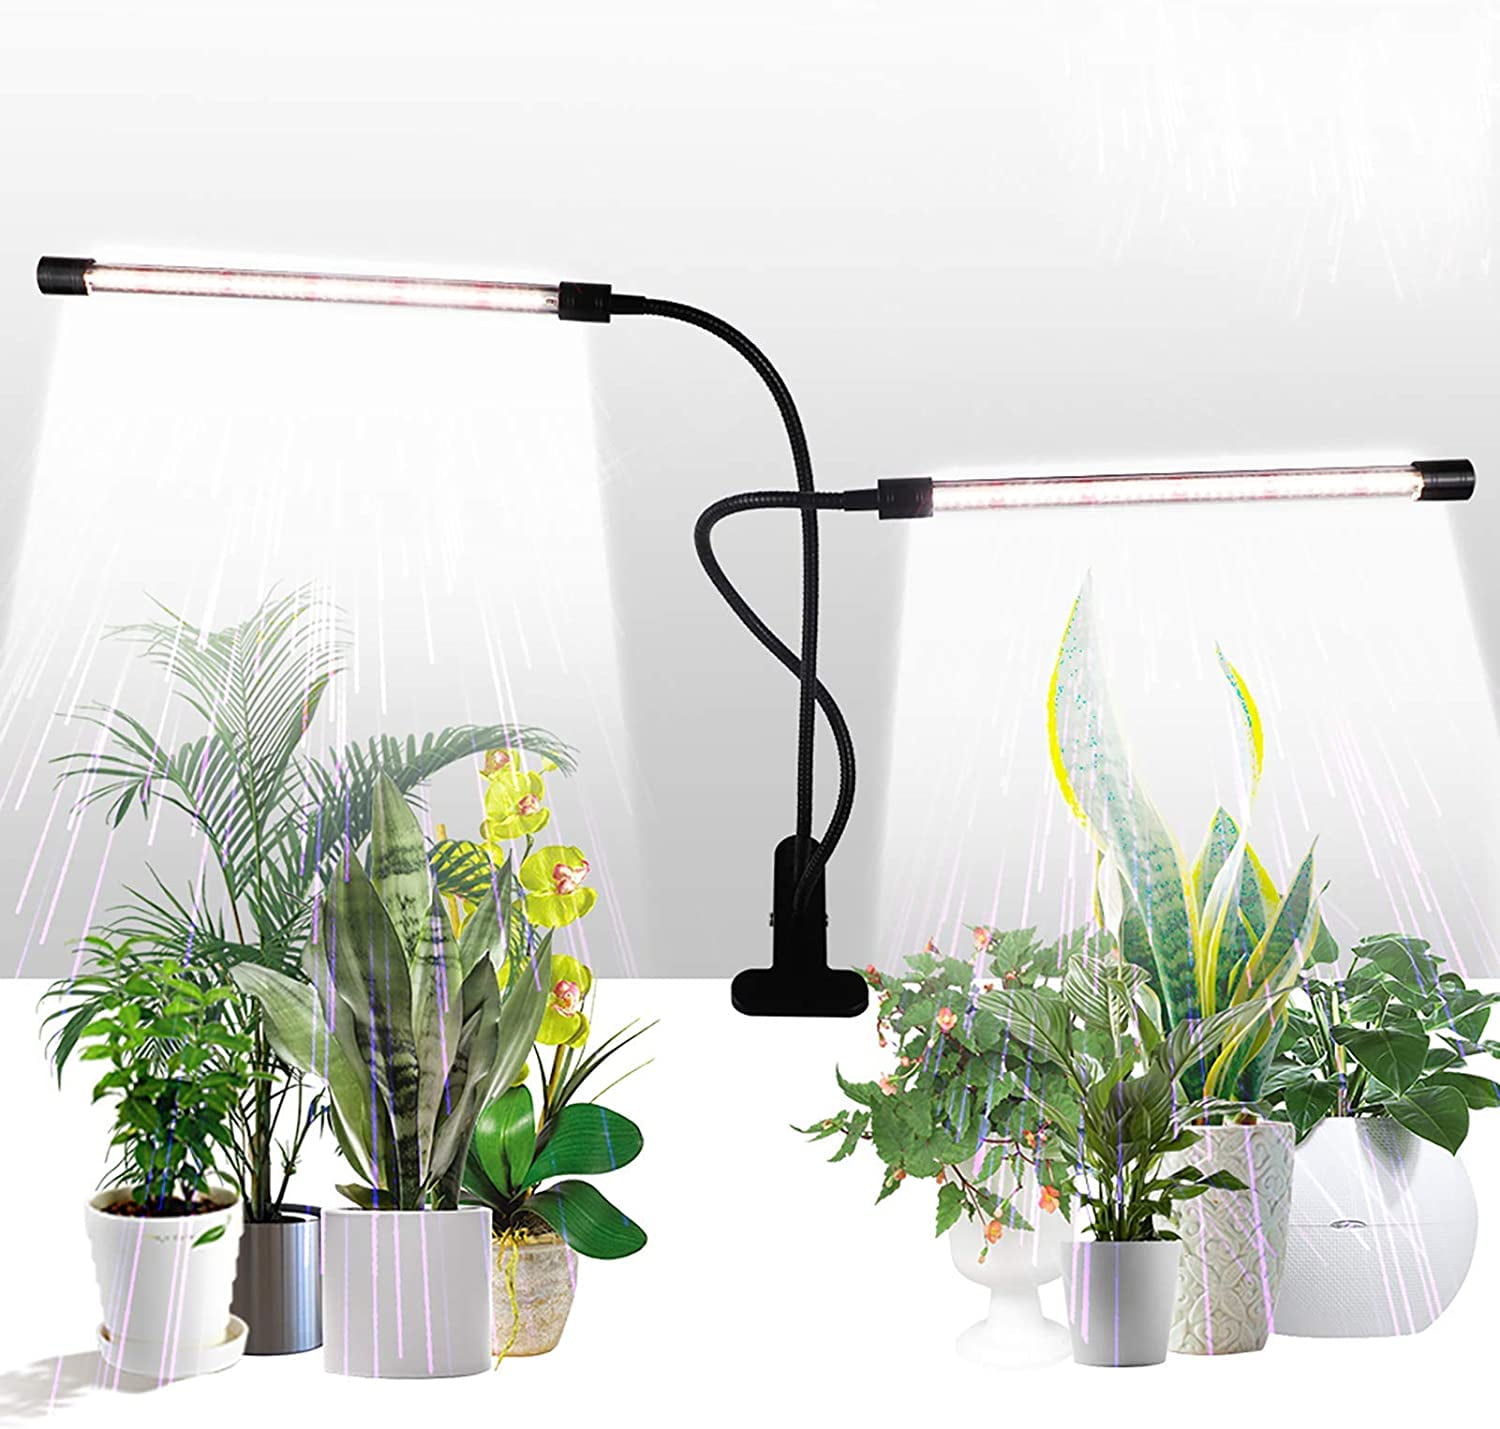 Indoor light to grow plants